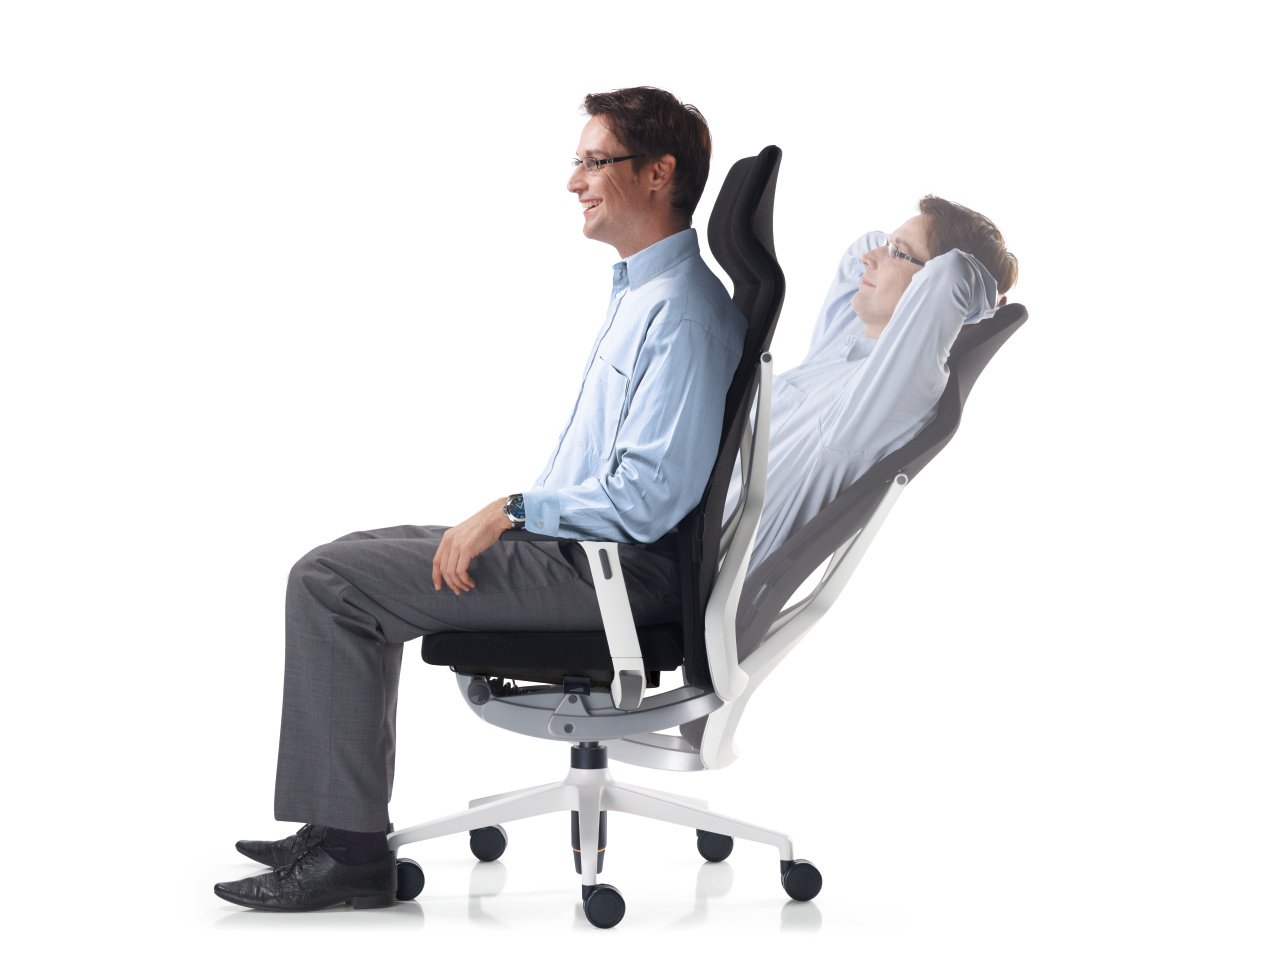 SHAPEVITAL Lordosenstütze Vital-Office - Ergonomische Rückenstütze für  Bürostühle und Autos - Mesh-Design Lendenkissen für aufrechte Körperhaltung